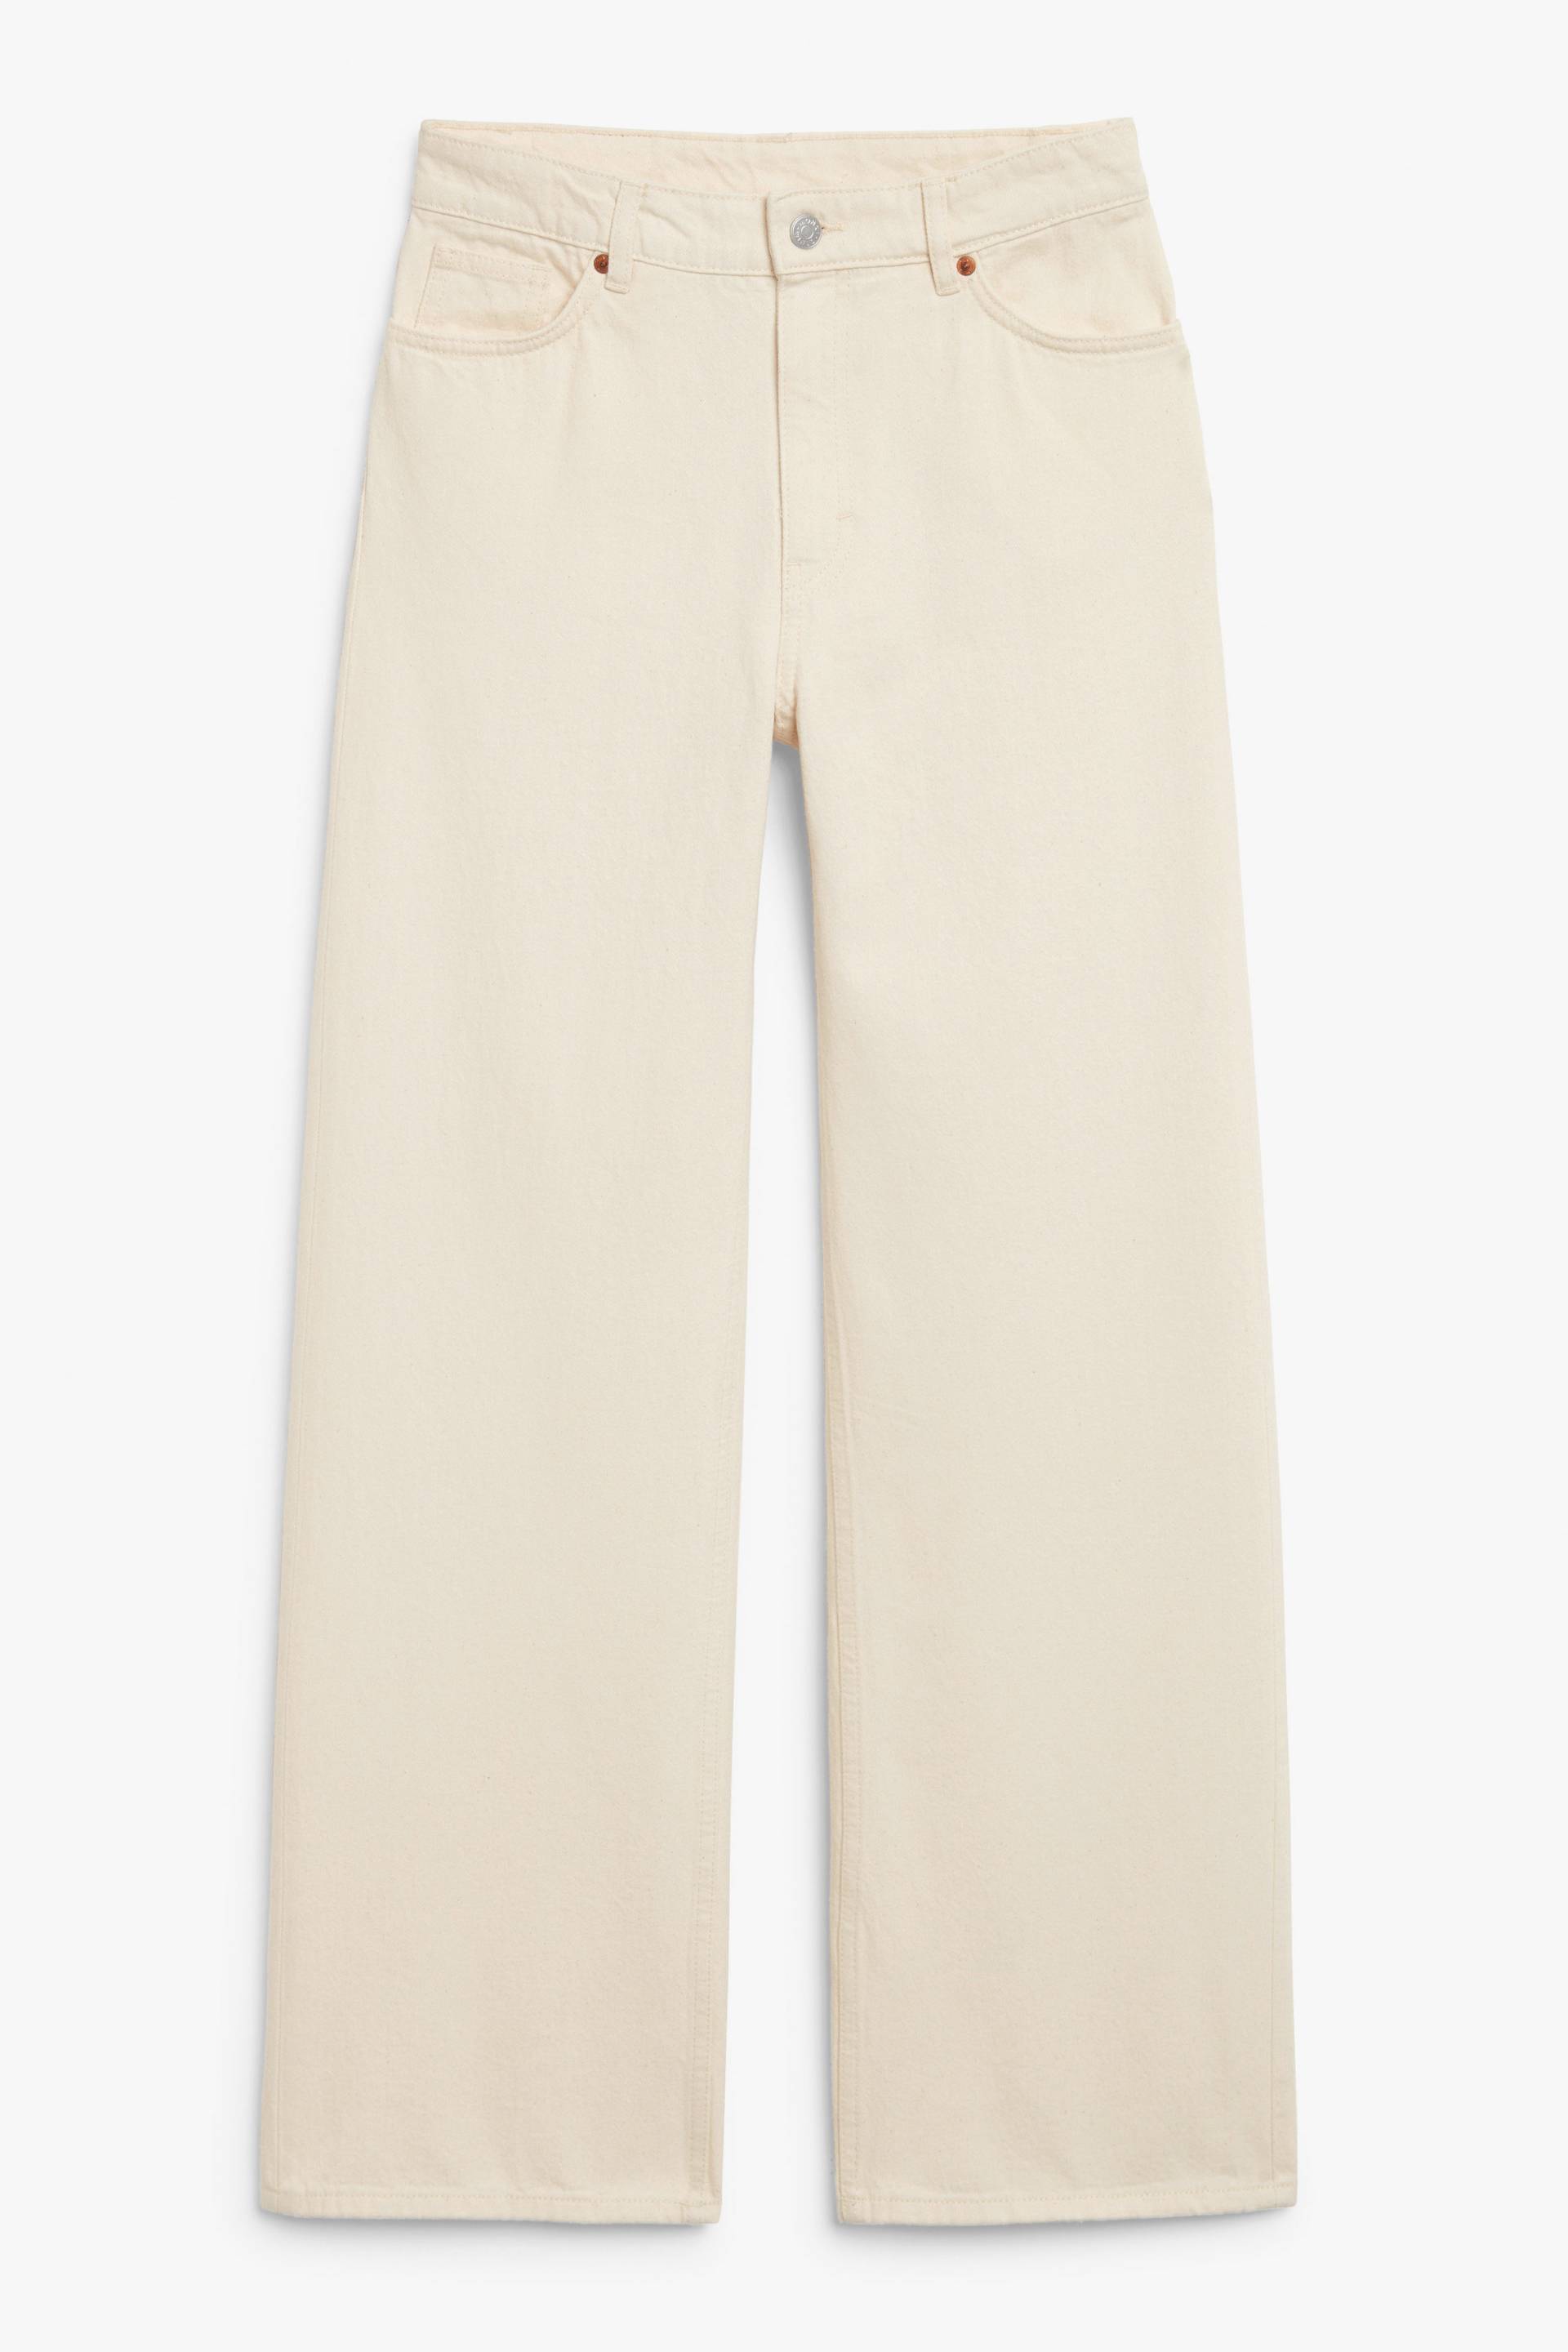 Monki Hoch sitzende weite cremeweiße Jeans Yoko Offwhite, Baggy in Größe W 24. Farbe: Off-white von Monki